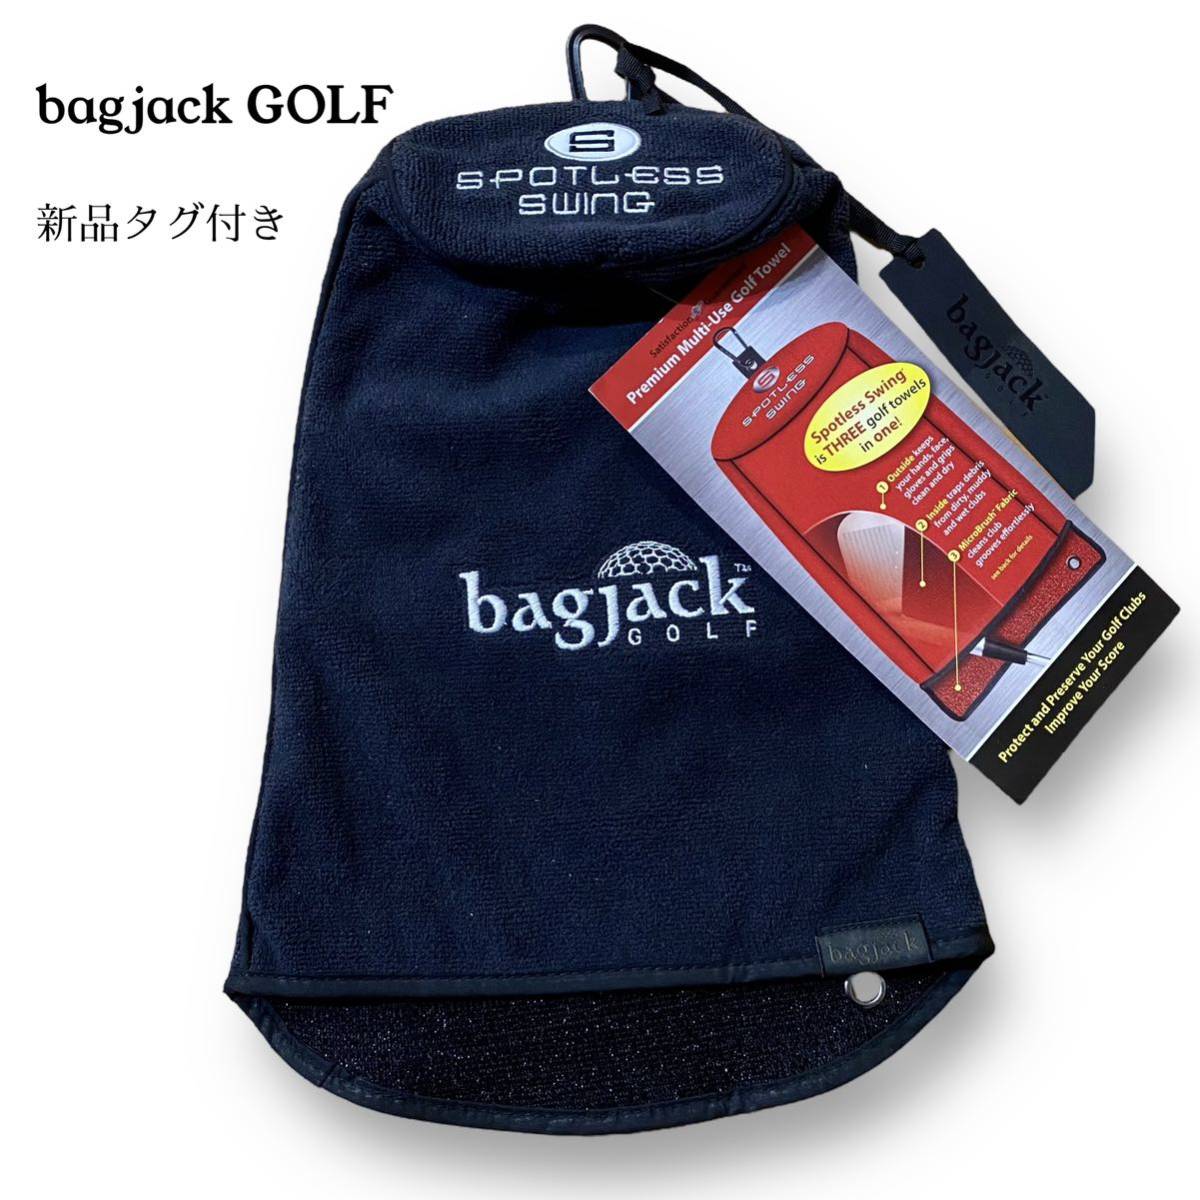 新品 未使用 bagjack GOLF バッグジャック ゴルフ マイクロファイバー タオル ヘッドカバー 黒 ブラック 刺繍_画像1